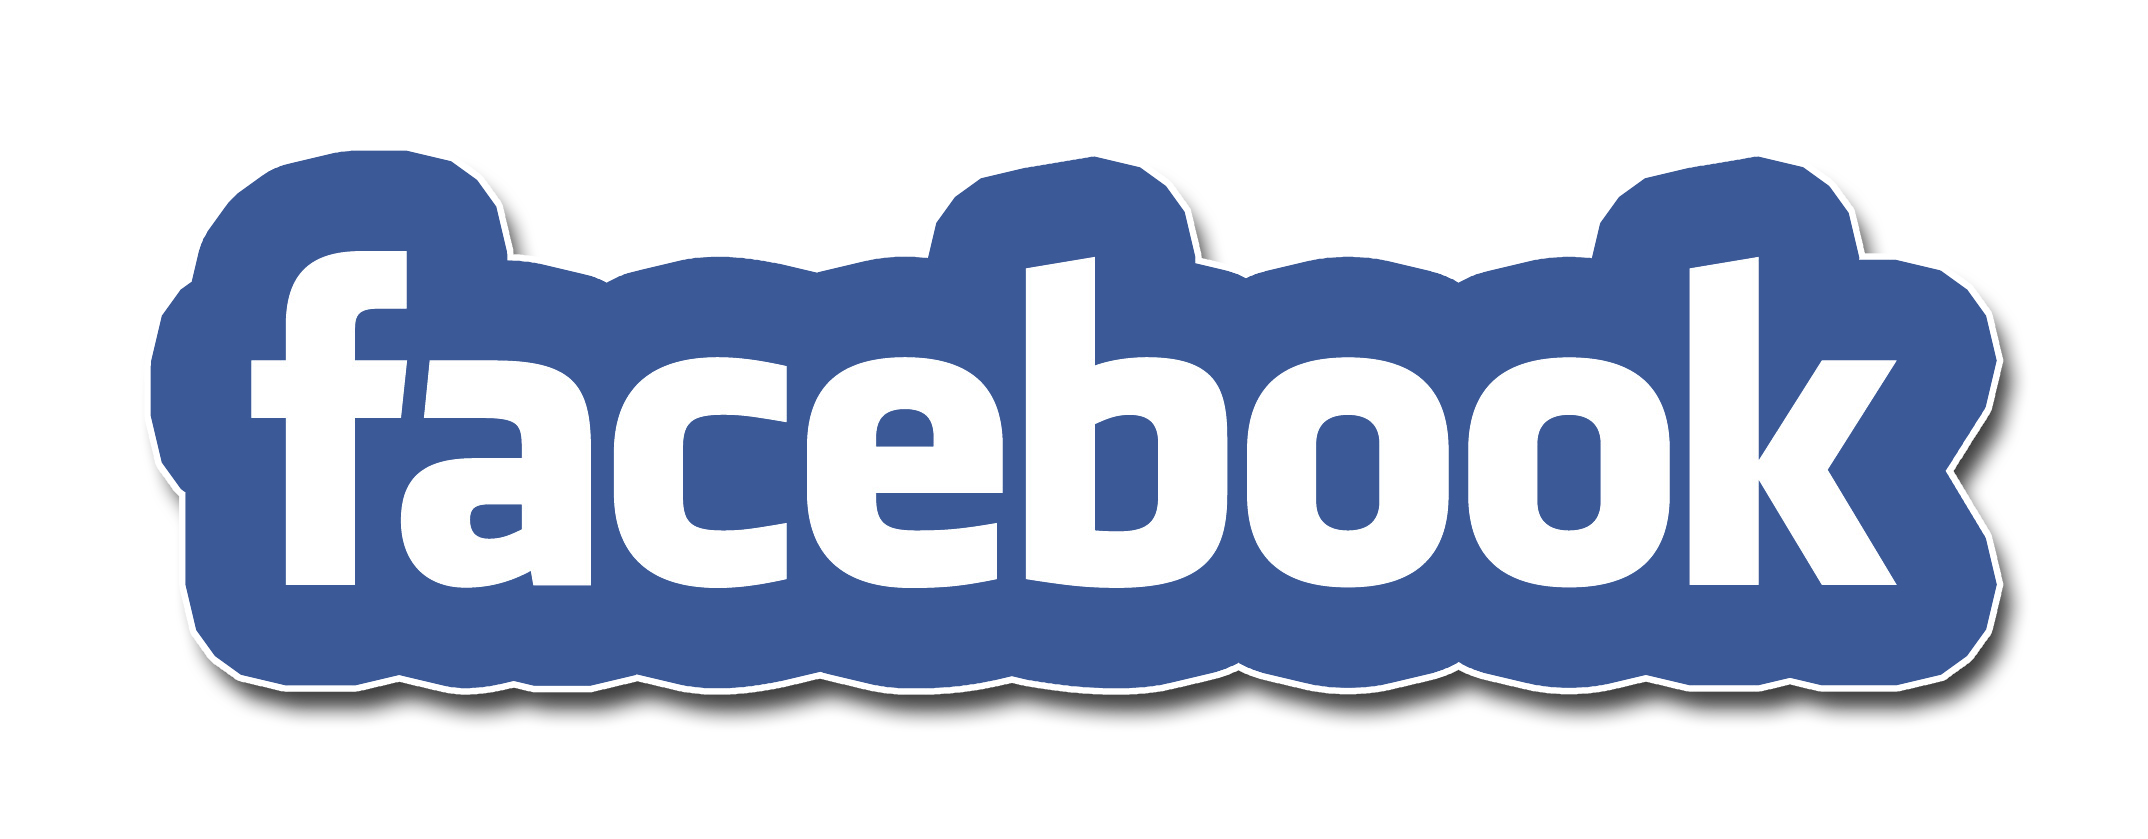 facebook text transparent logo 23